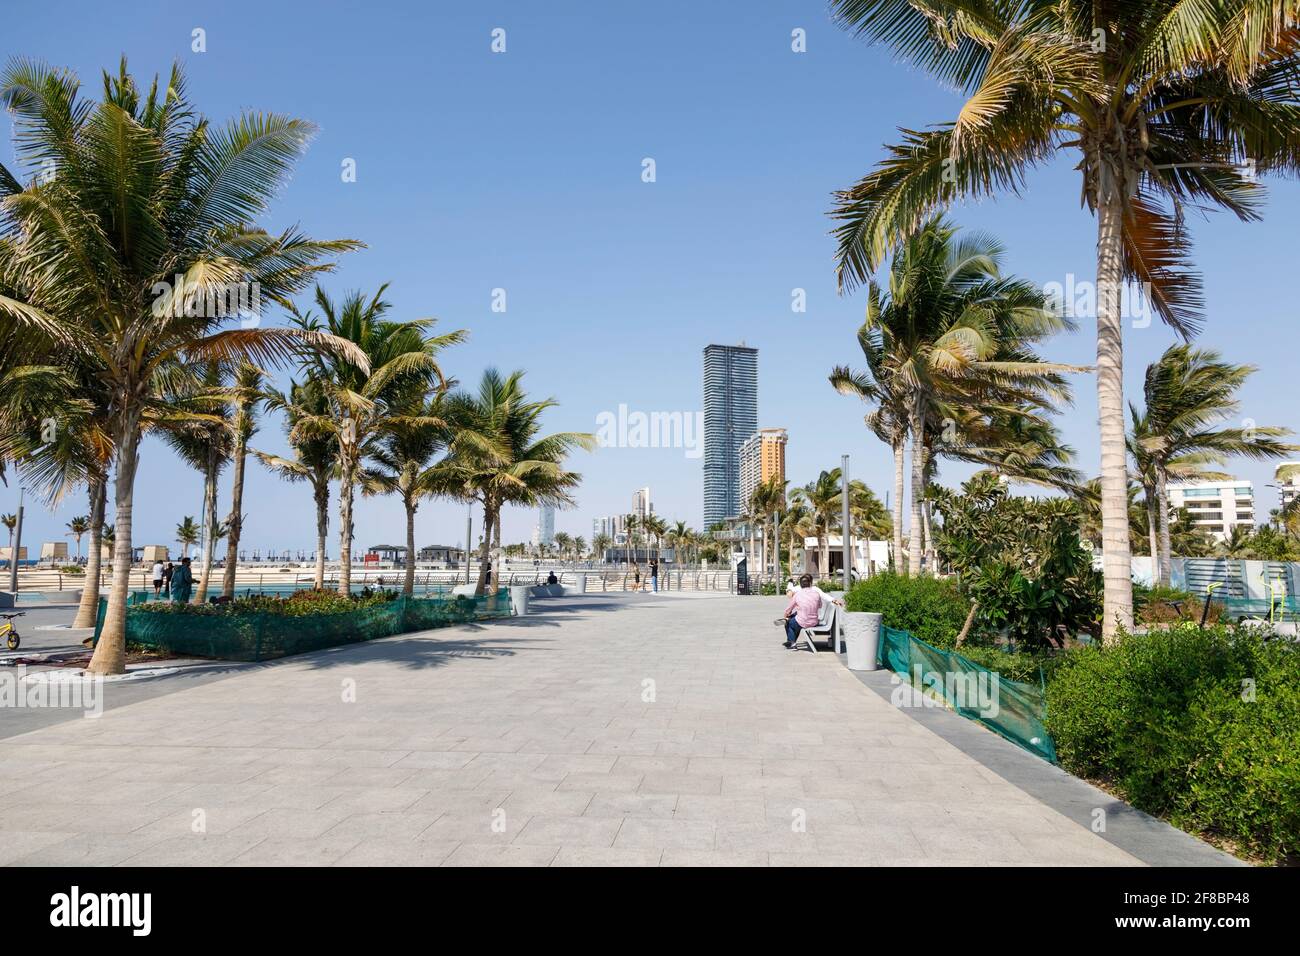 Jeddah, Saudi Arabia, February 22 2020: Corniche, promenade right on the shores of the Red Sea in downtown Jeddah, Saudi Arabia Stock Photo